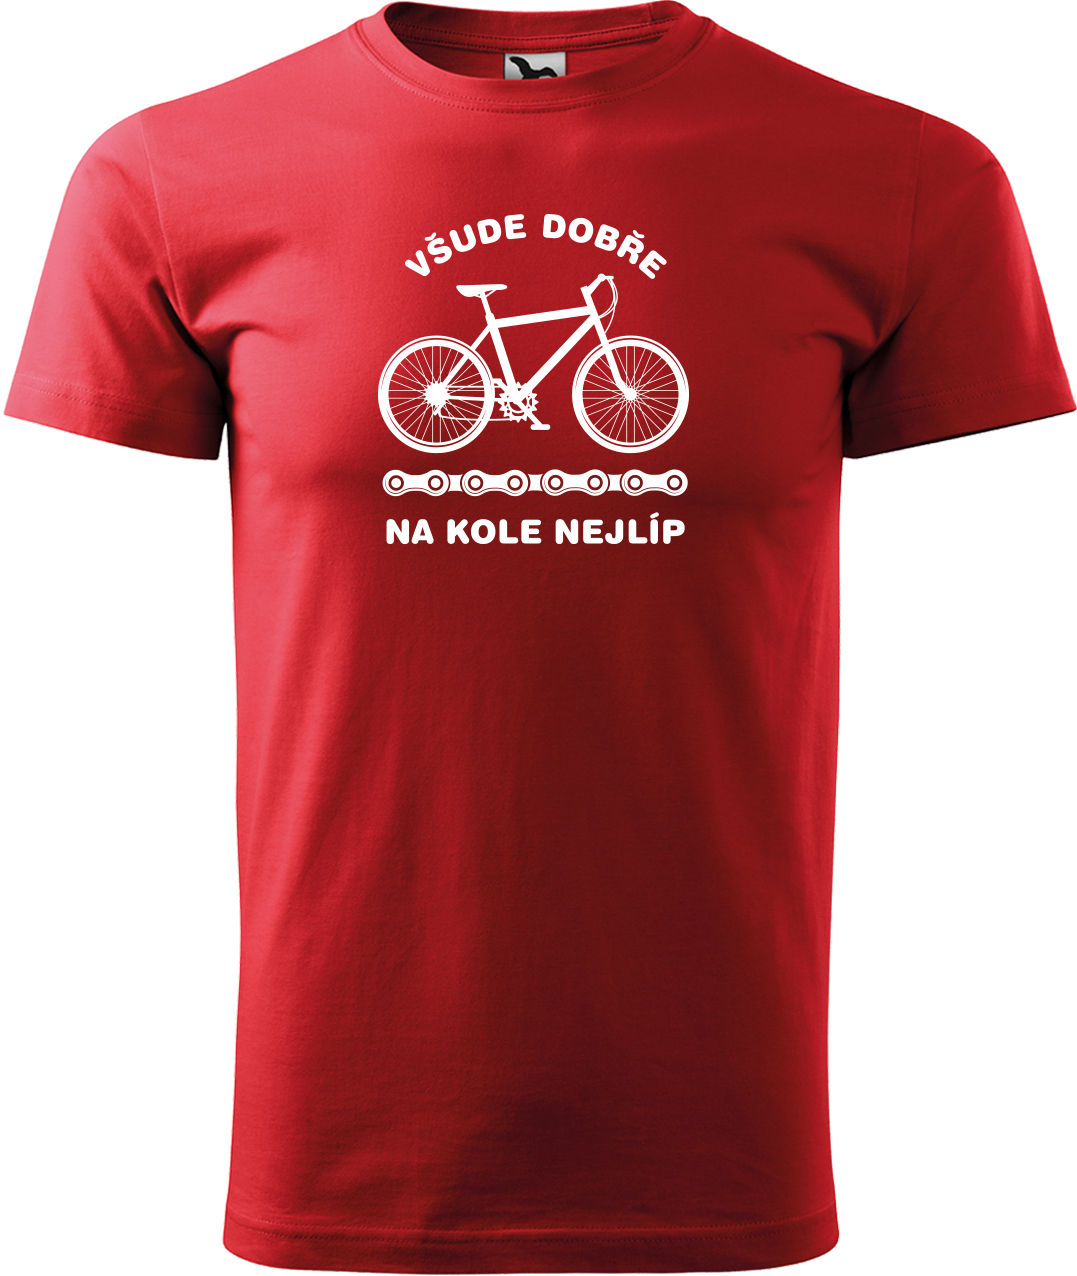 Pánské tričko s kolem - Všude dobře, na kole nejlíp Velikost: XL, Barva: Červená (07)